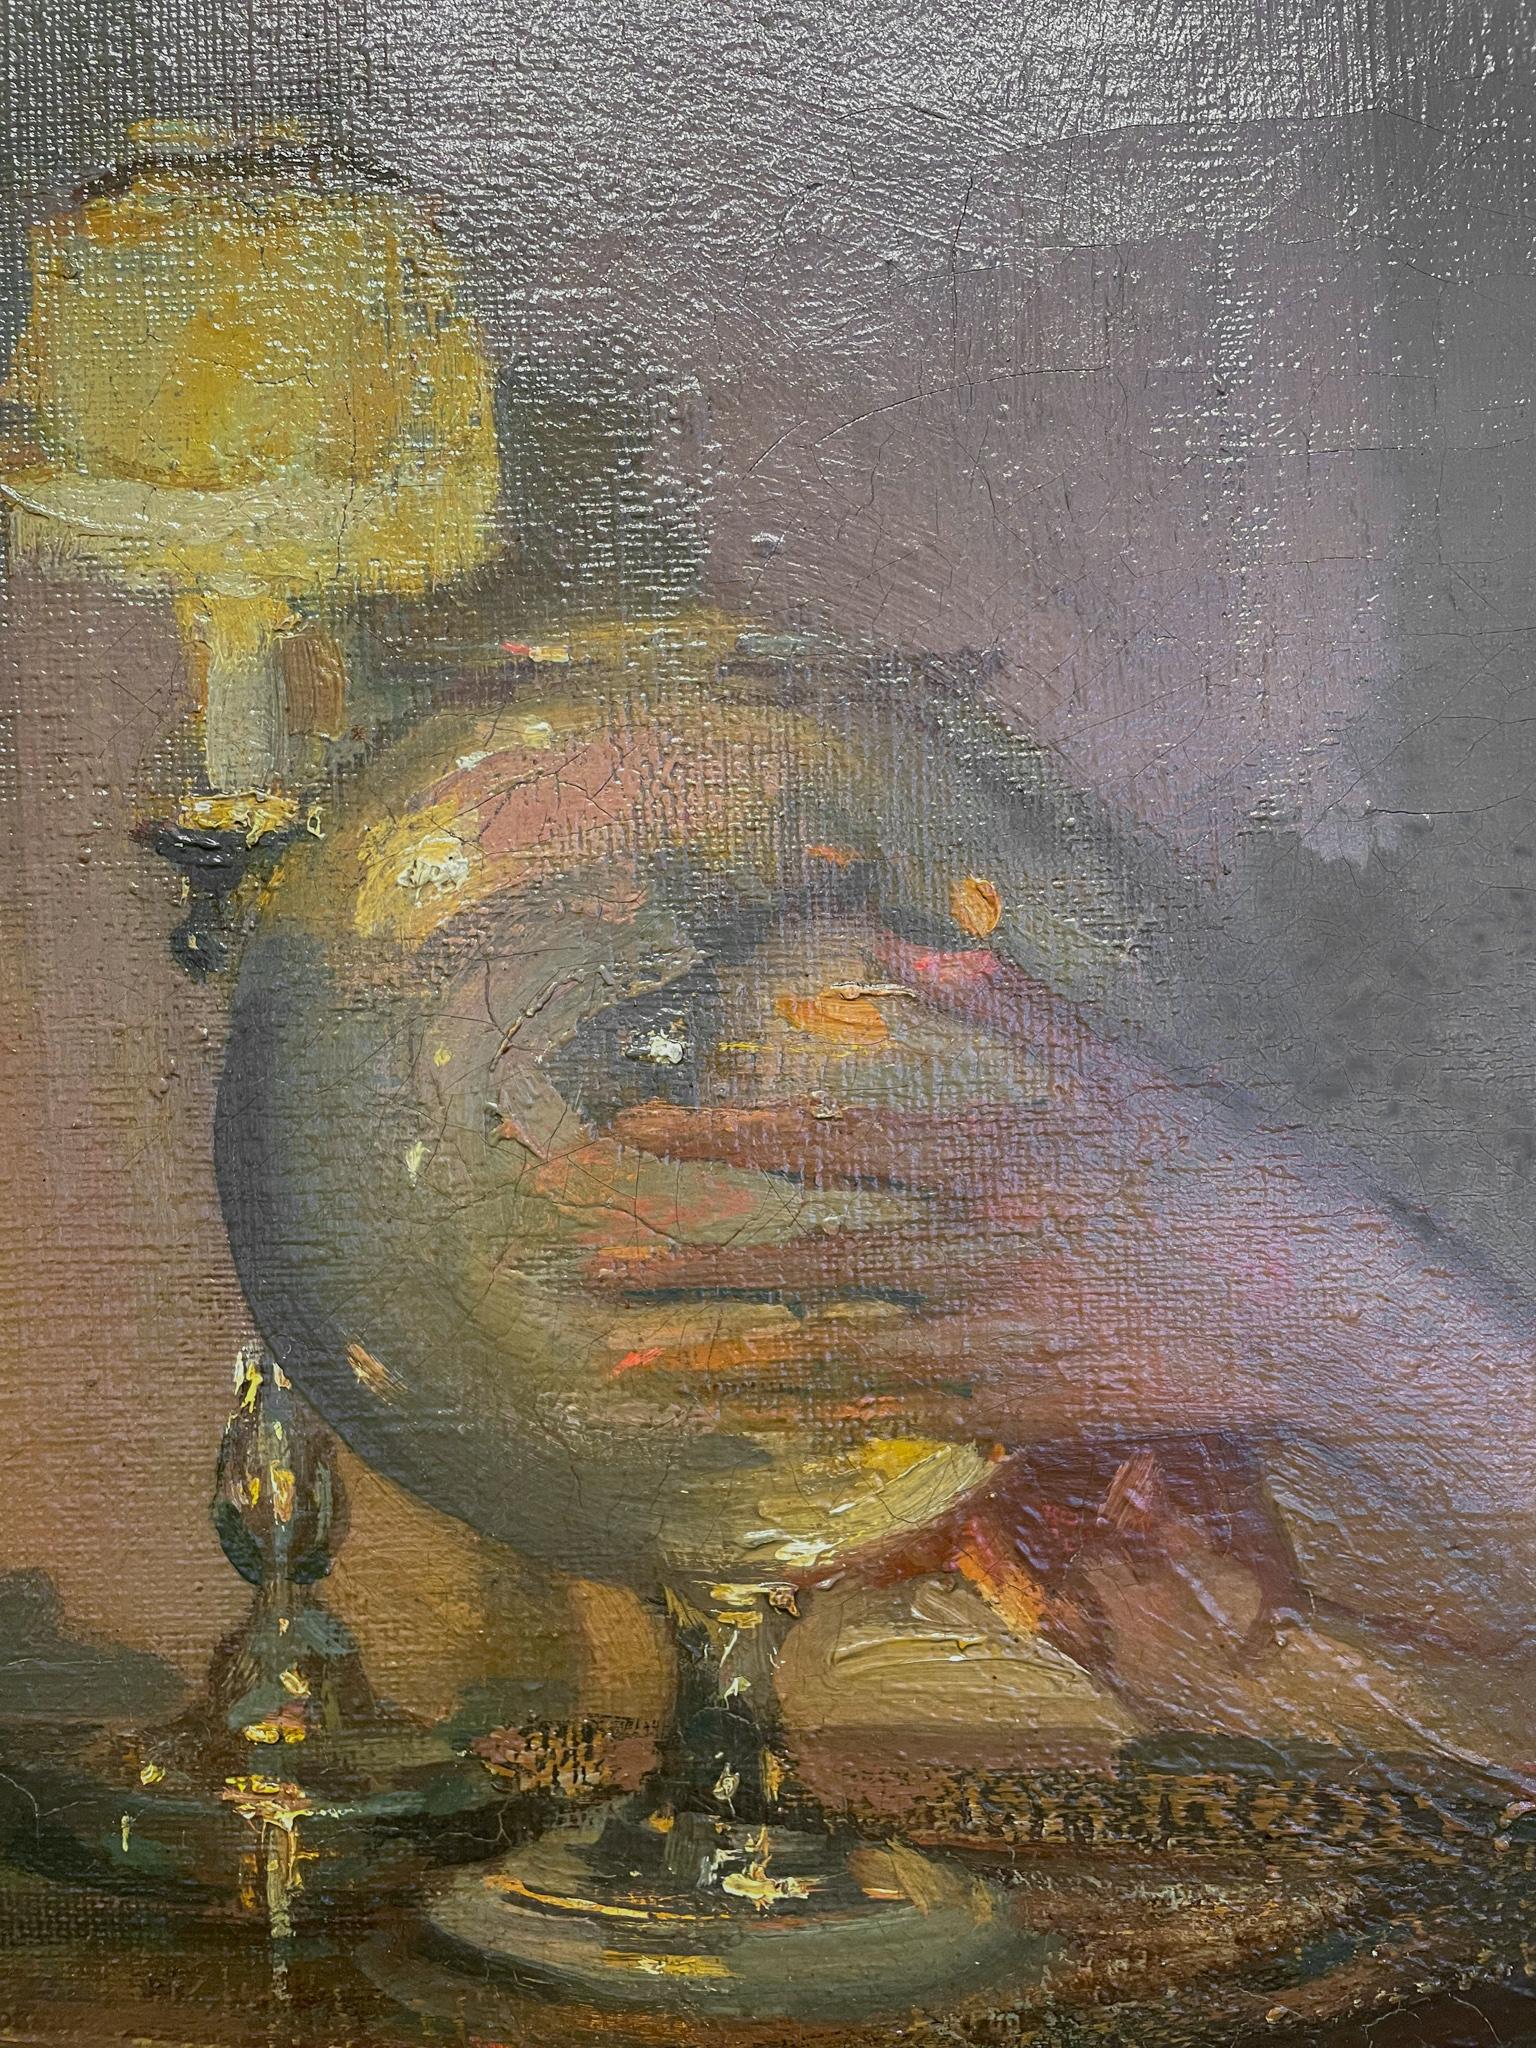 Le bocal à poissons rouges de Richard Miller (1875-1943)
Huile sur toile
37 ½ x 29 ¾ pouces sans cadre (95.25 x 75.565 cm)
46 ⅝ x 36 ¼ pouces encadré (118.428 x 97.155)
Signé en bas à droite

Description :
Richard E. Miller était un impressionniste